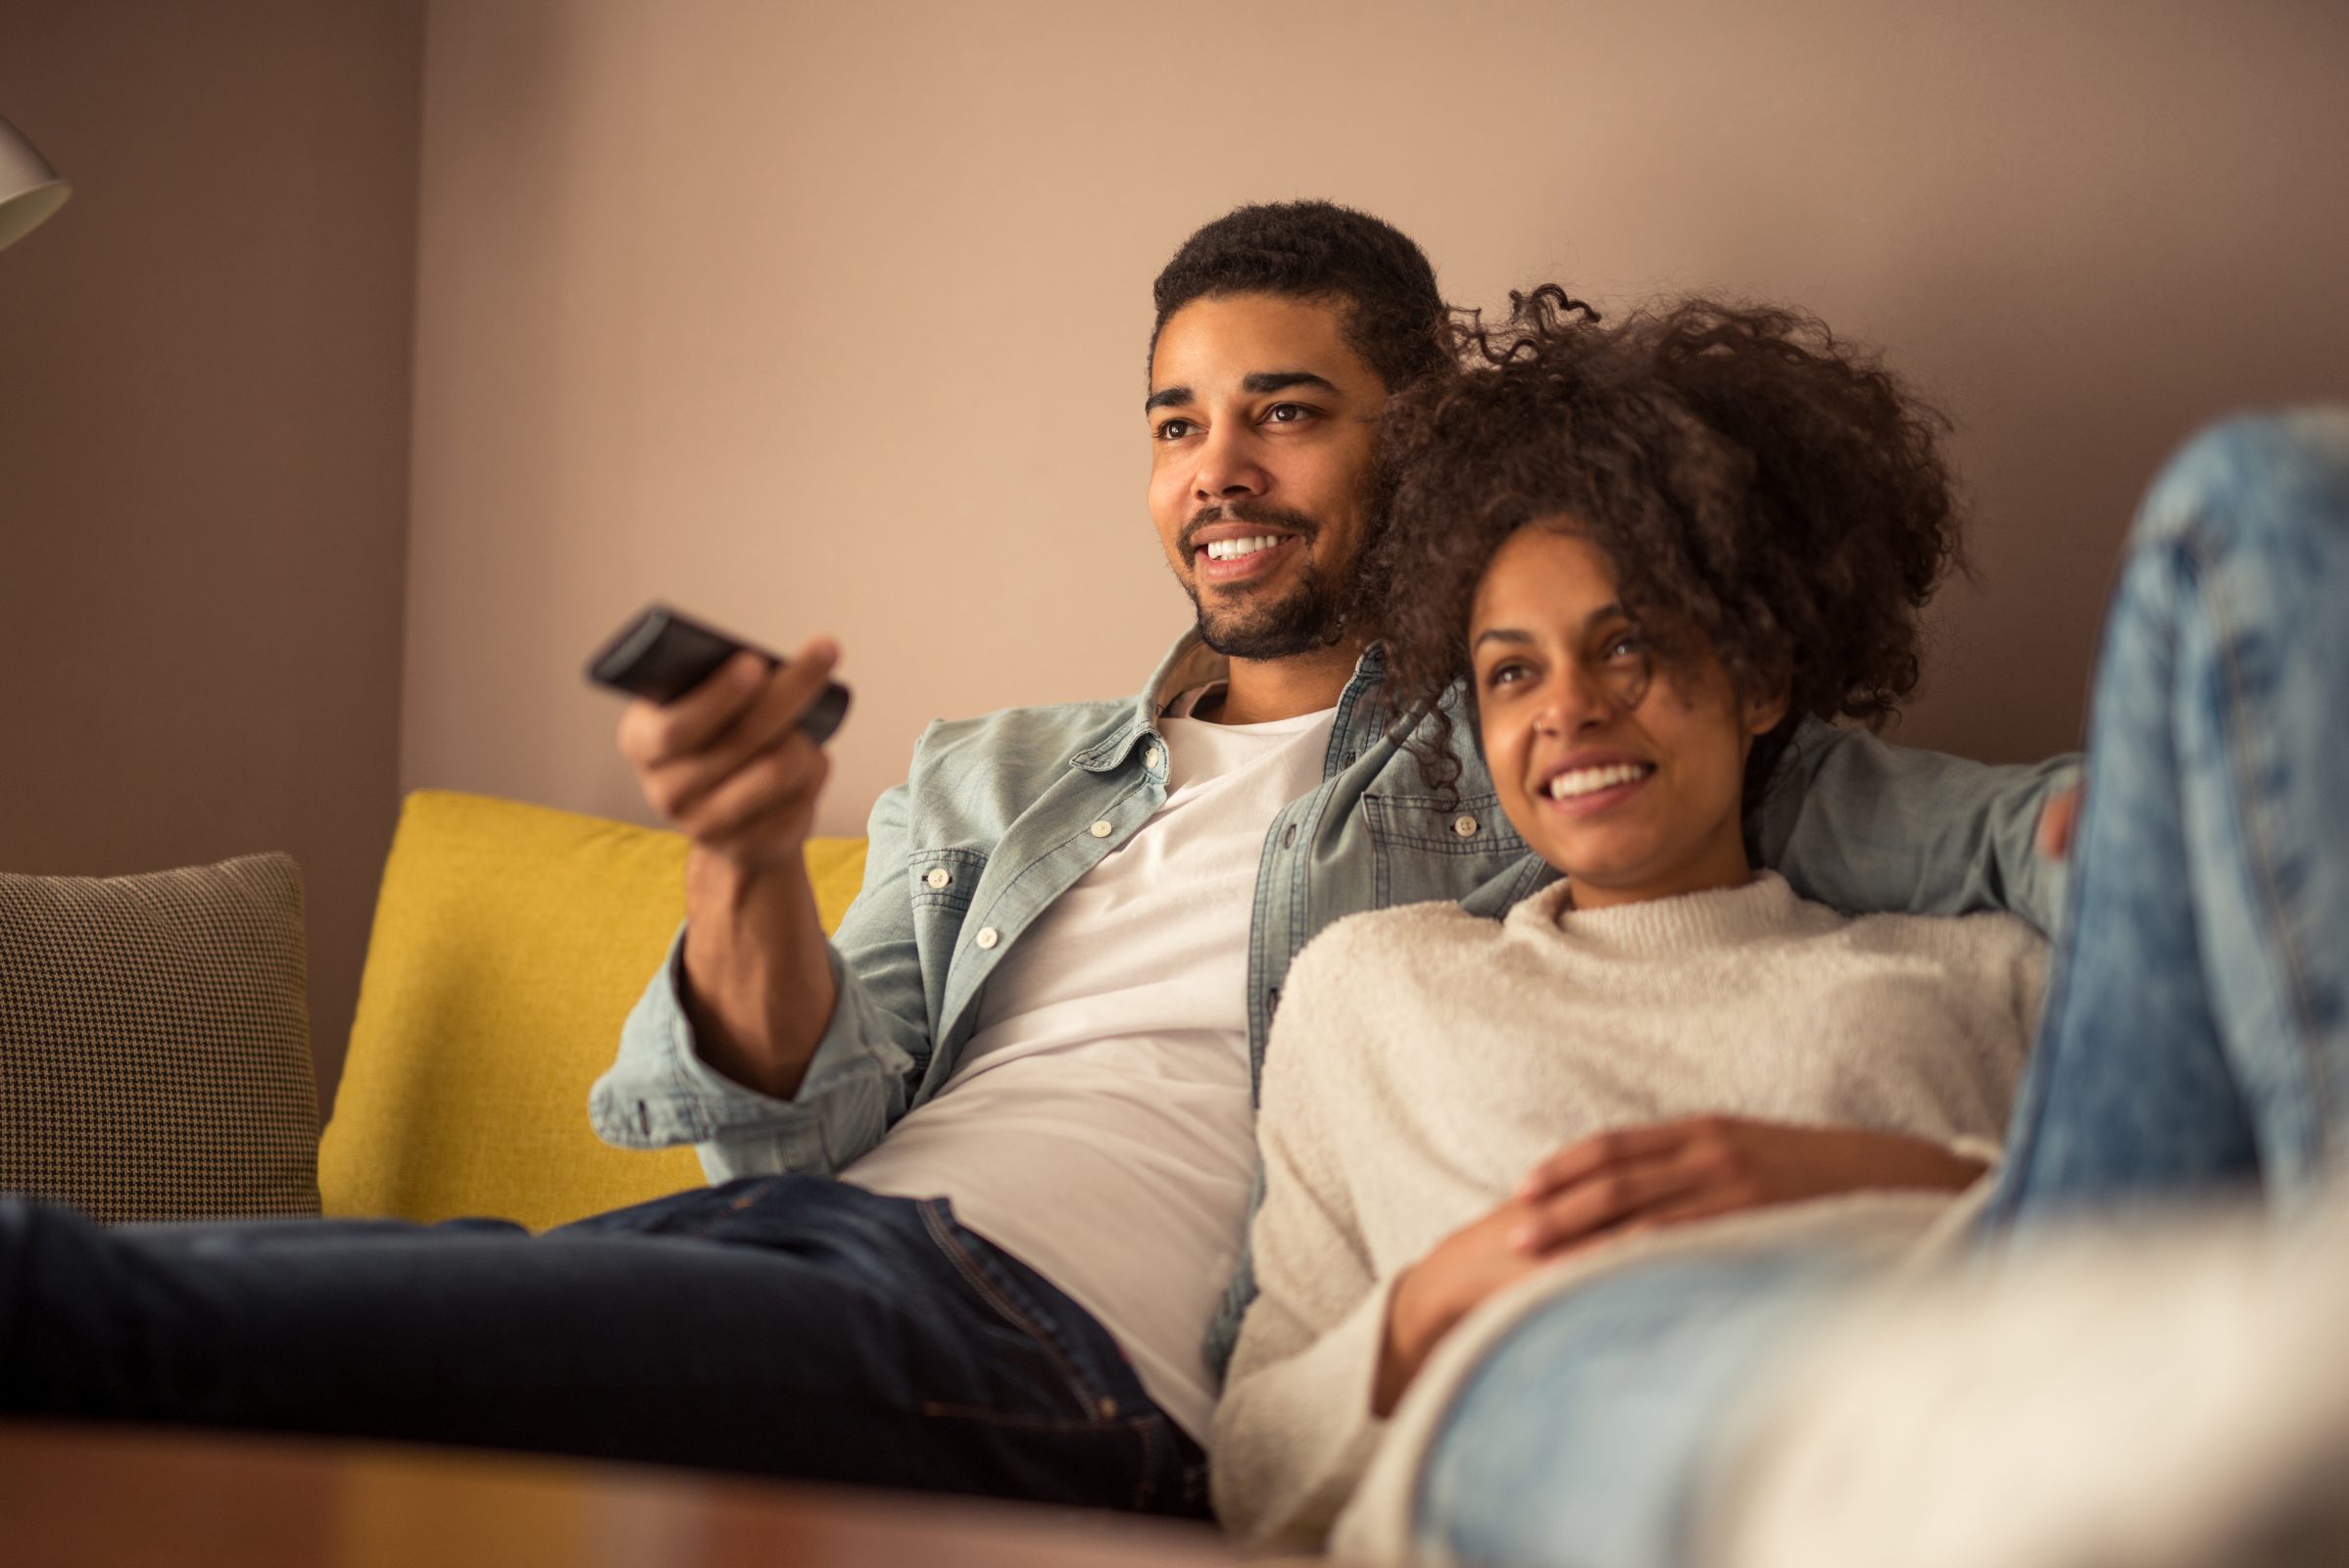 Un homme et une femme regardent la télévision sur le canapé, la télécommande à la main.